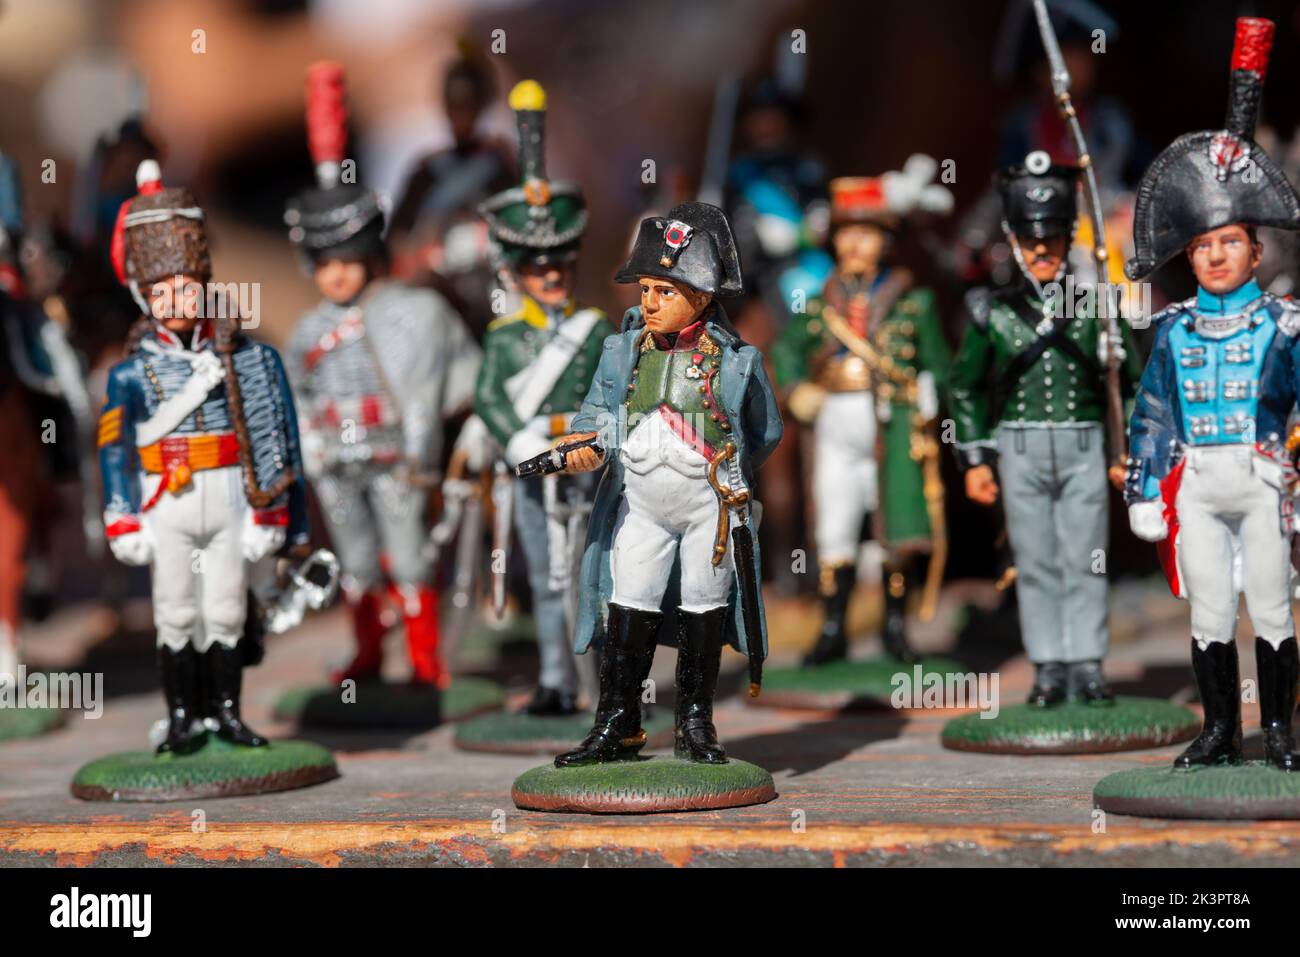 Italy, Flea Market, Toy Figurines of Emperor Napoleon Bonaparte Stock Photo